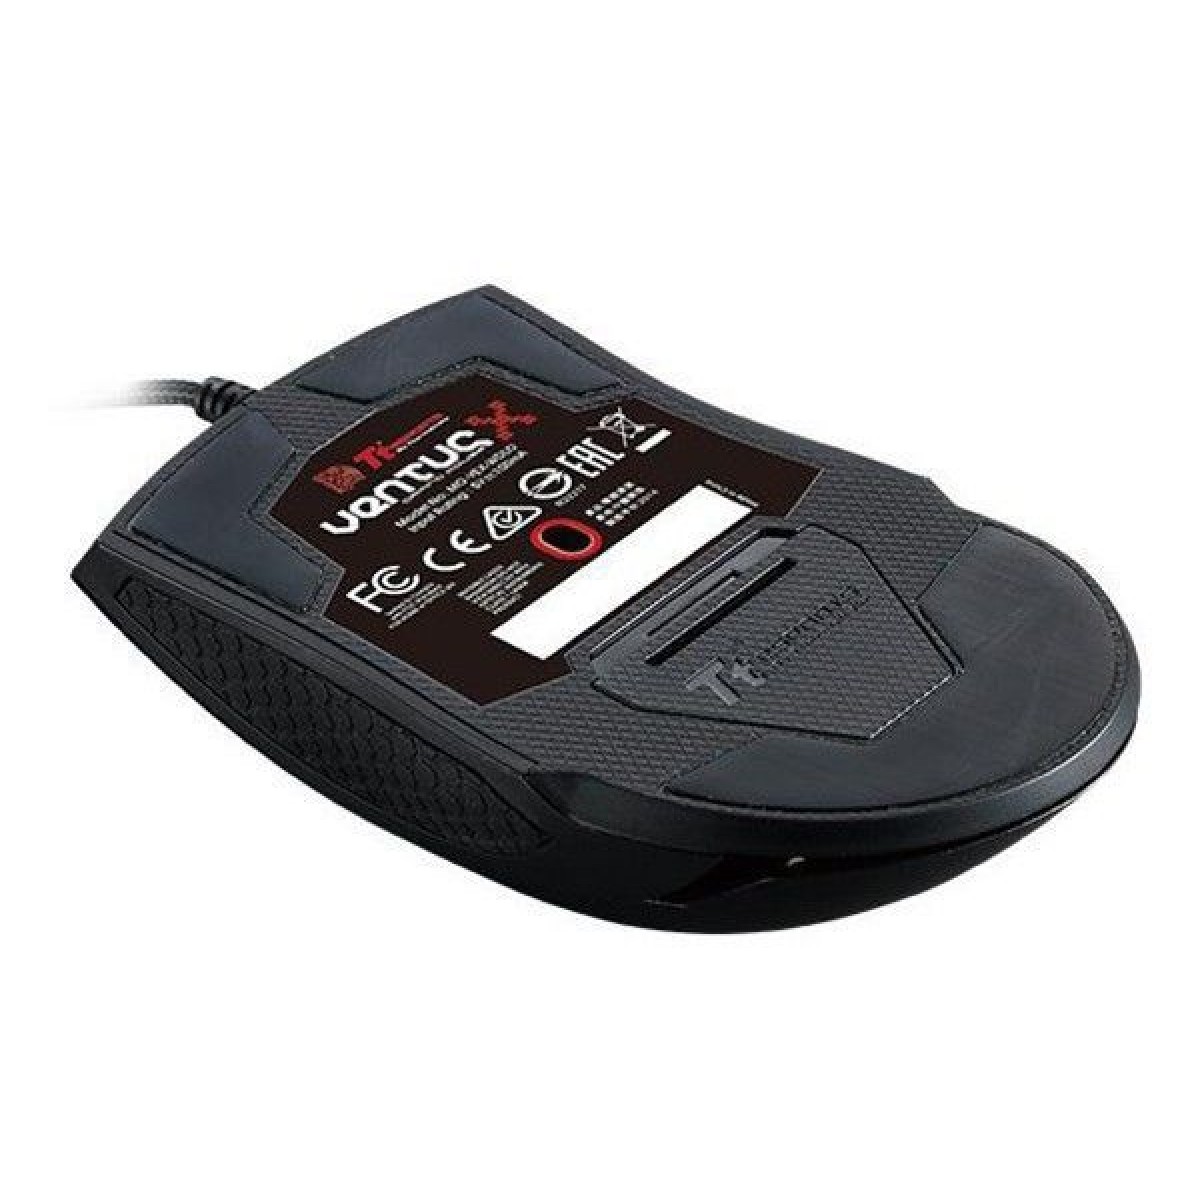 Mouse Thermaltake TT Sports Ventus X Laser Black Gaming MO-VEX-WDLOBK-01